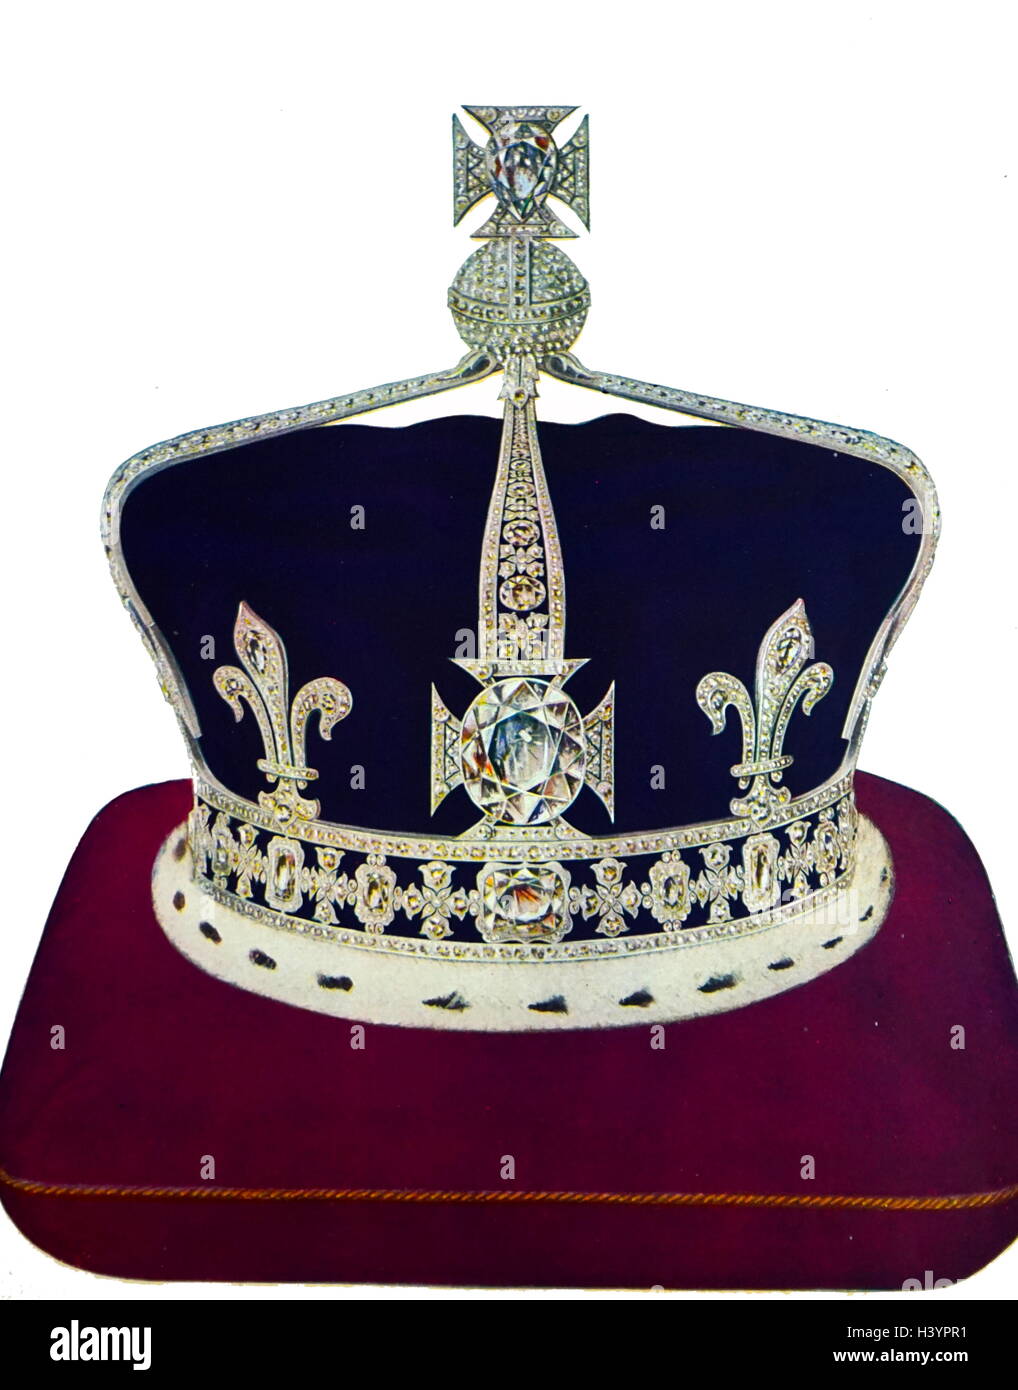 Queen Elizabeth's Crown, hergestellt von Garrard, war der erste in Platin angebracht werden. Es bietet einen stirnreif von Königin Victoria verwendet und ist von der Koh-I-Noor blasoniert Diamant. Krone der Königin Elizabeth, die Königinmutter, auch "Königin Mutter Krone genannt, ist die Krone für Königin Elizabeth, die Frau von König George VI, bei ihrer Krönung im Jahre 1937 zu tragen und Öffnungen des Parlaments während der Regierungszeit ihres Mannes. Stockfoto